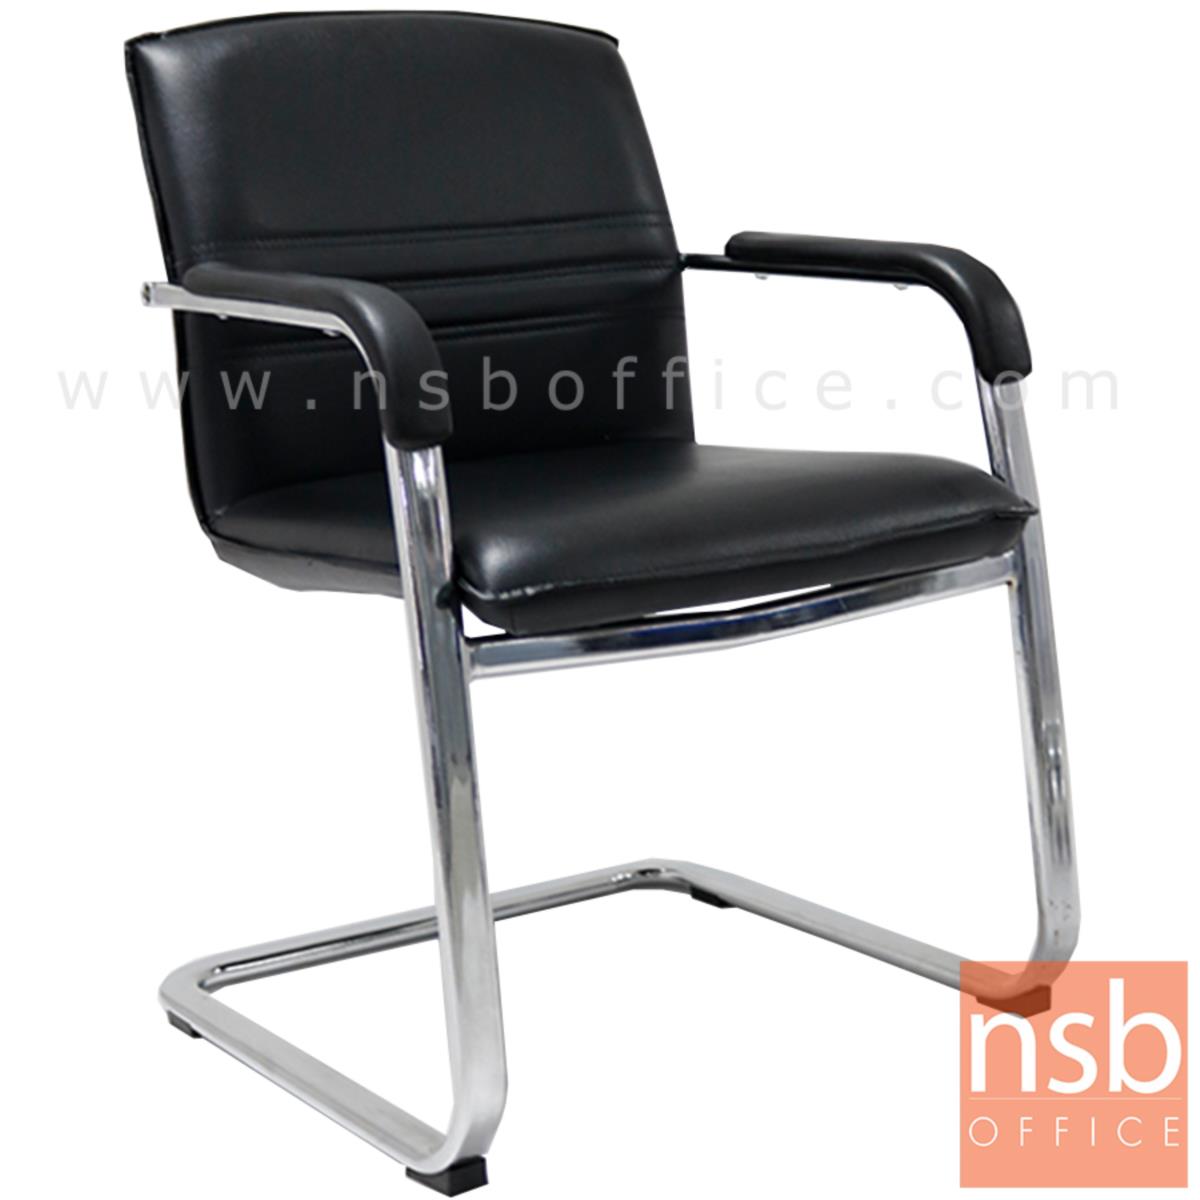 B04A097:เก้าอี้รับแขกขาตัวซี  รุ่น Robbins (ร็อบบินส์)  ขาเหล็กชุบโครเมี่ยม